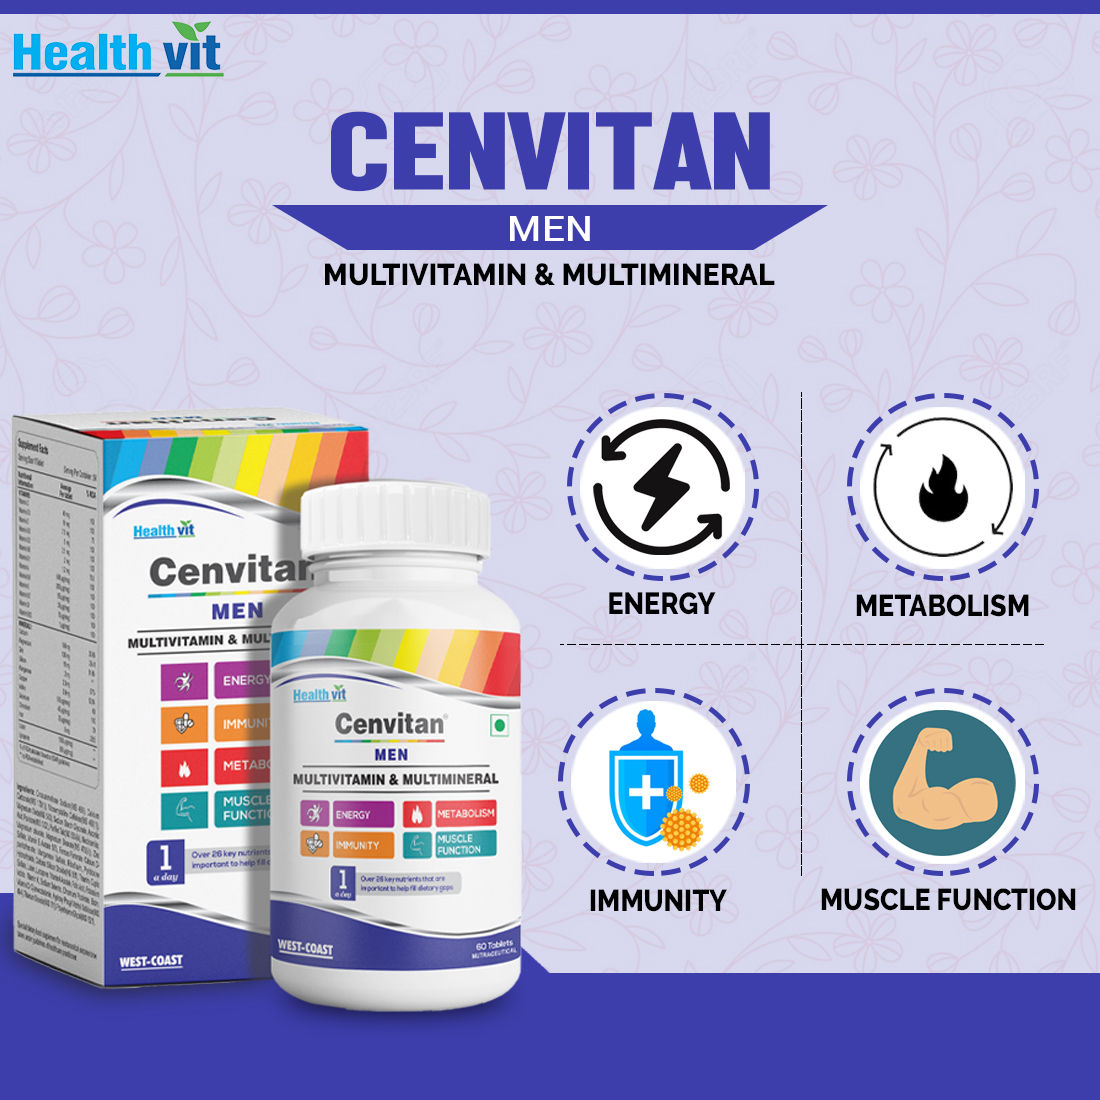 Healthvit Cenvitan Men Multivitamin & Multimineral, 60 Tablets, Pack of 1 